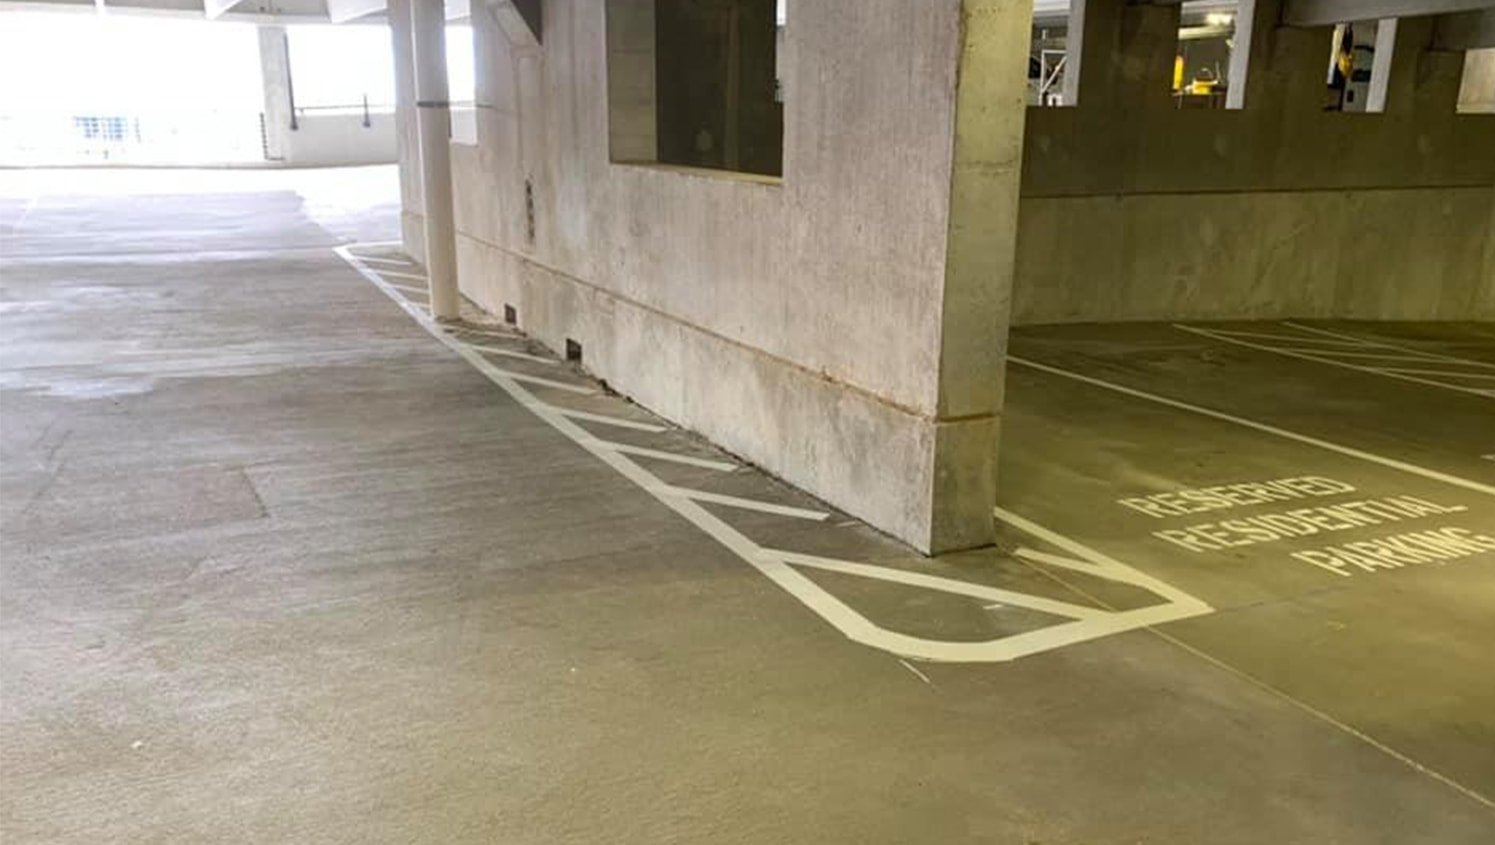 hazard lines around parking garage curb